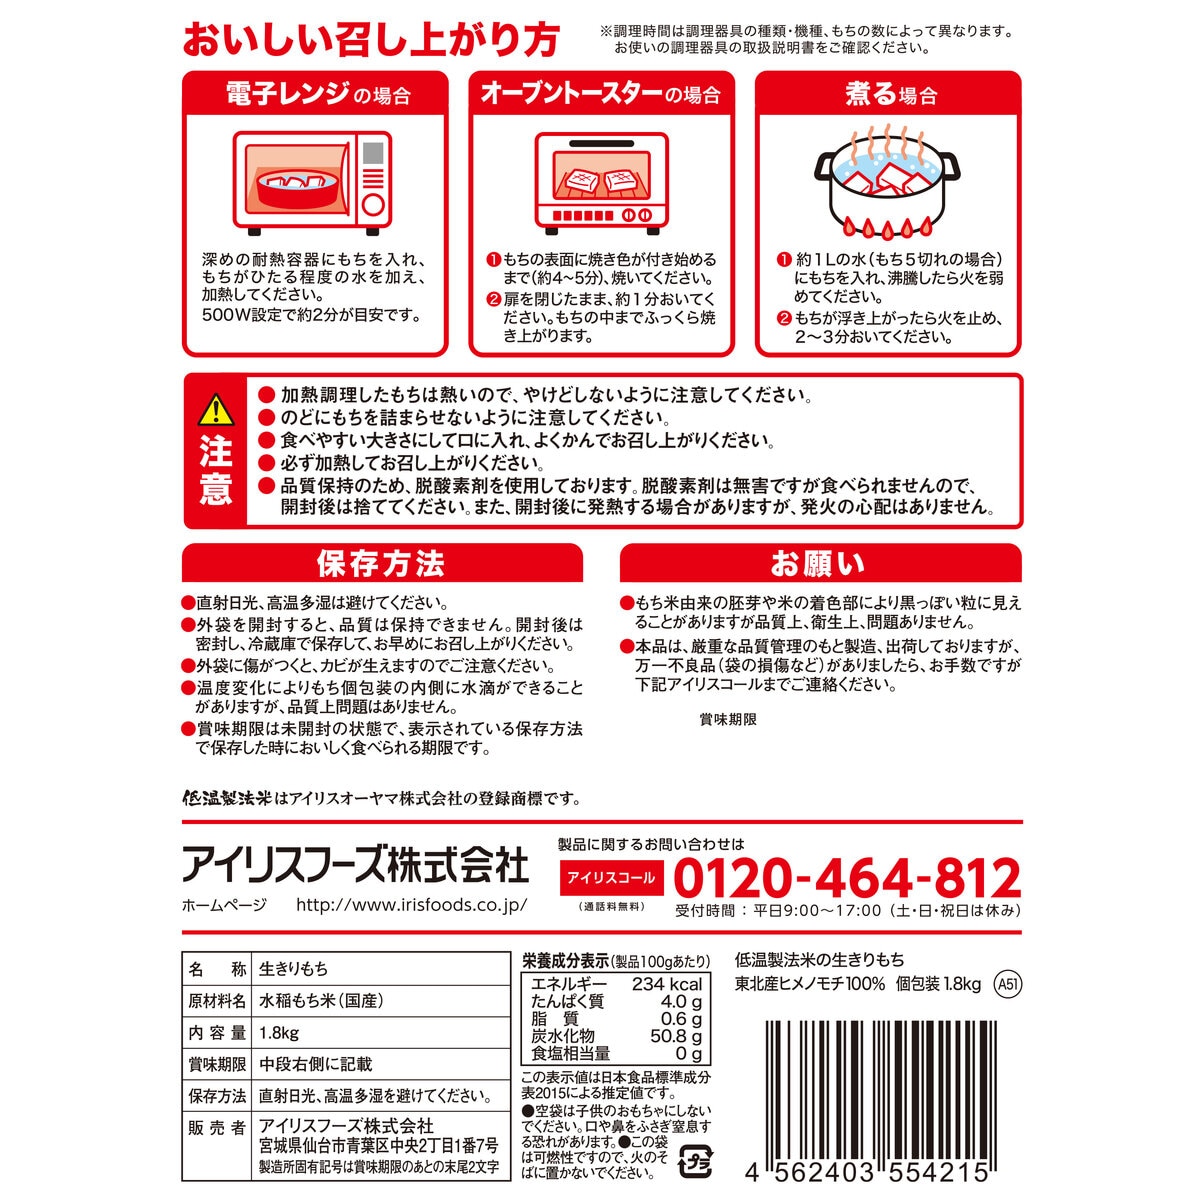 アイリスオーヤマ 低温製法米 生きりもち 1.8kg Costco Japan